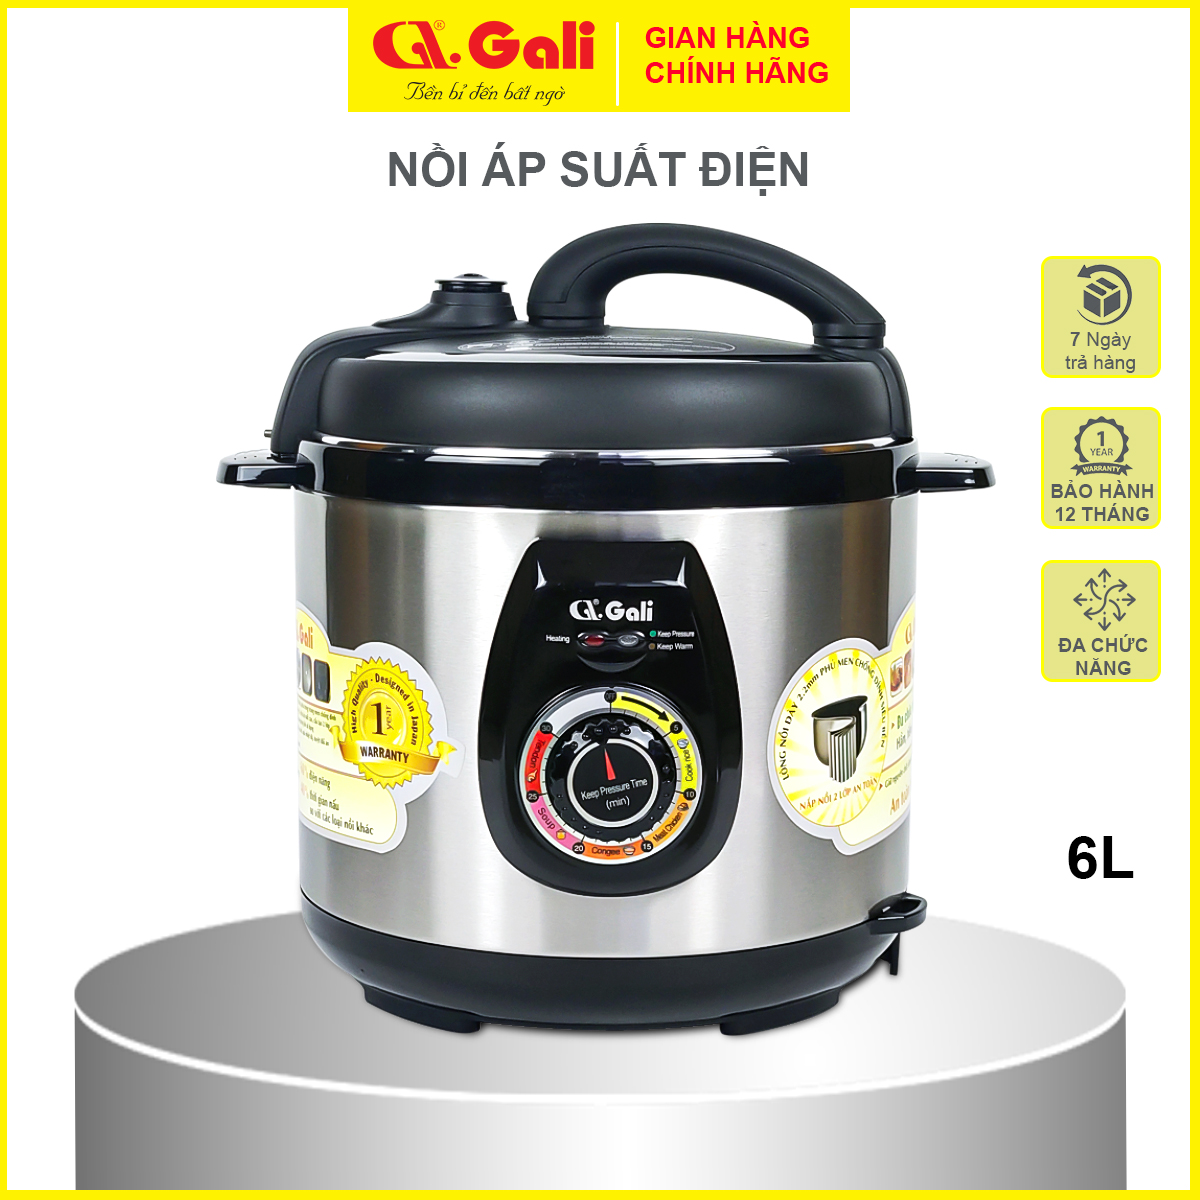 Nồi áp suất điện Gali GL-1626 6 lít, đa chức năng nấu, hầm các loại thịt, tôm cua cá, ninh đậu, nấu chè, hàng chính hãng bảo hành 24 tháng.